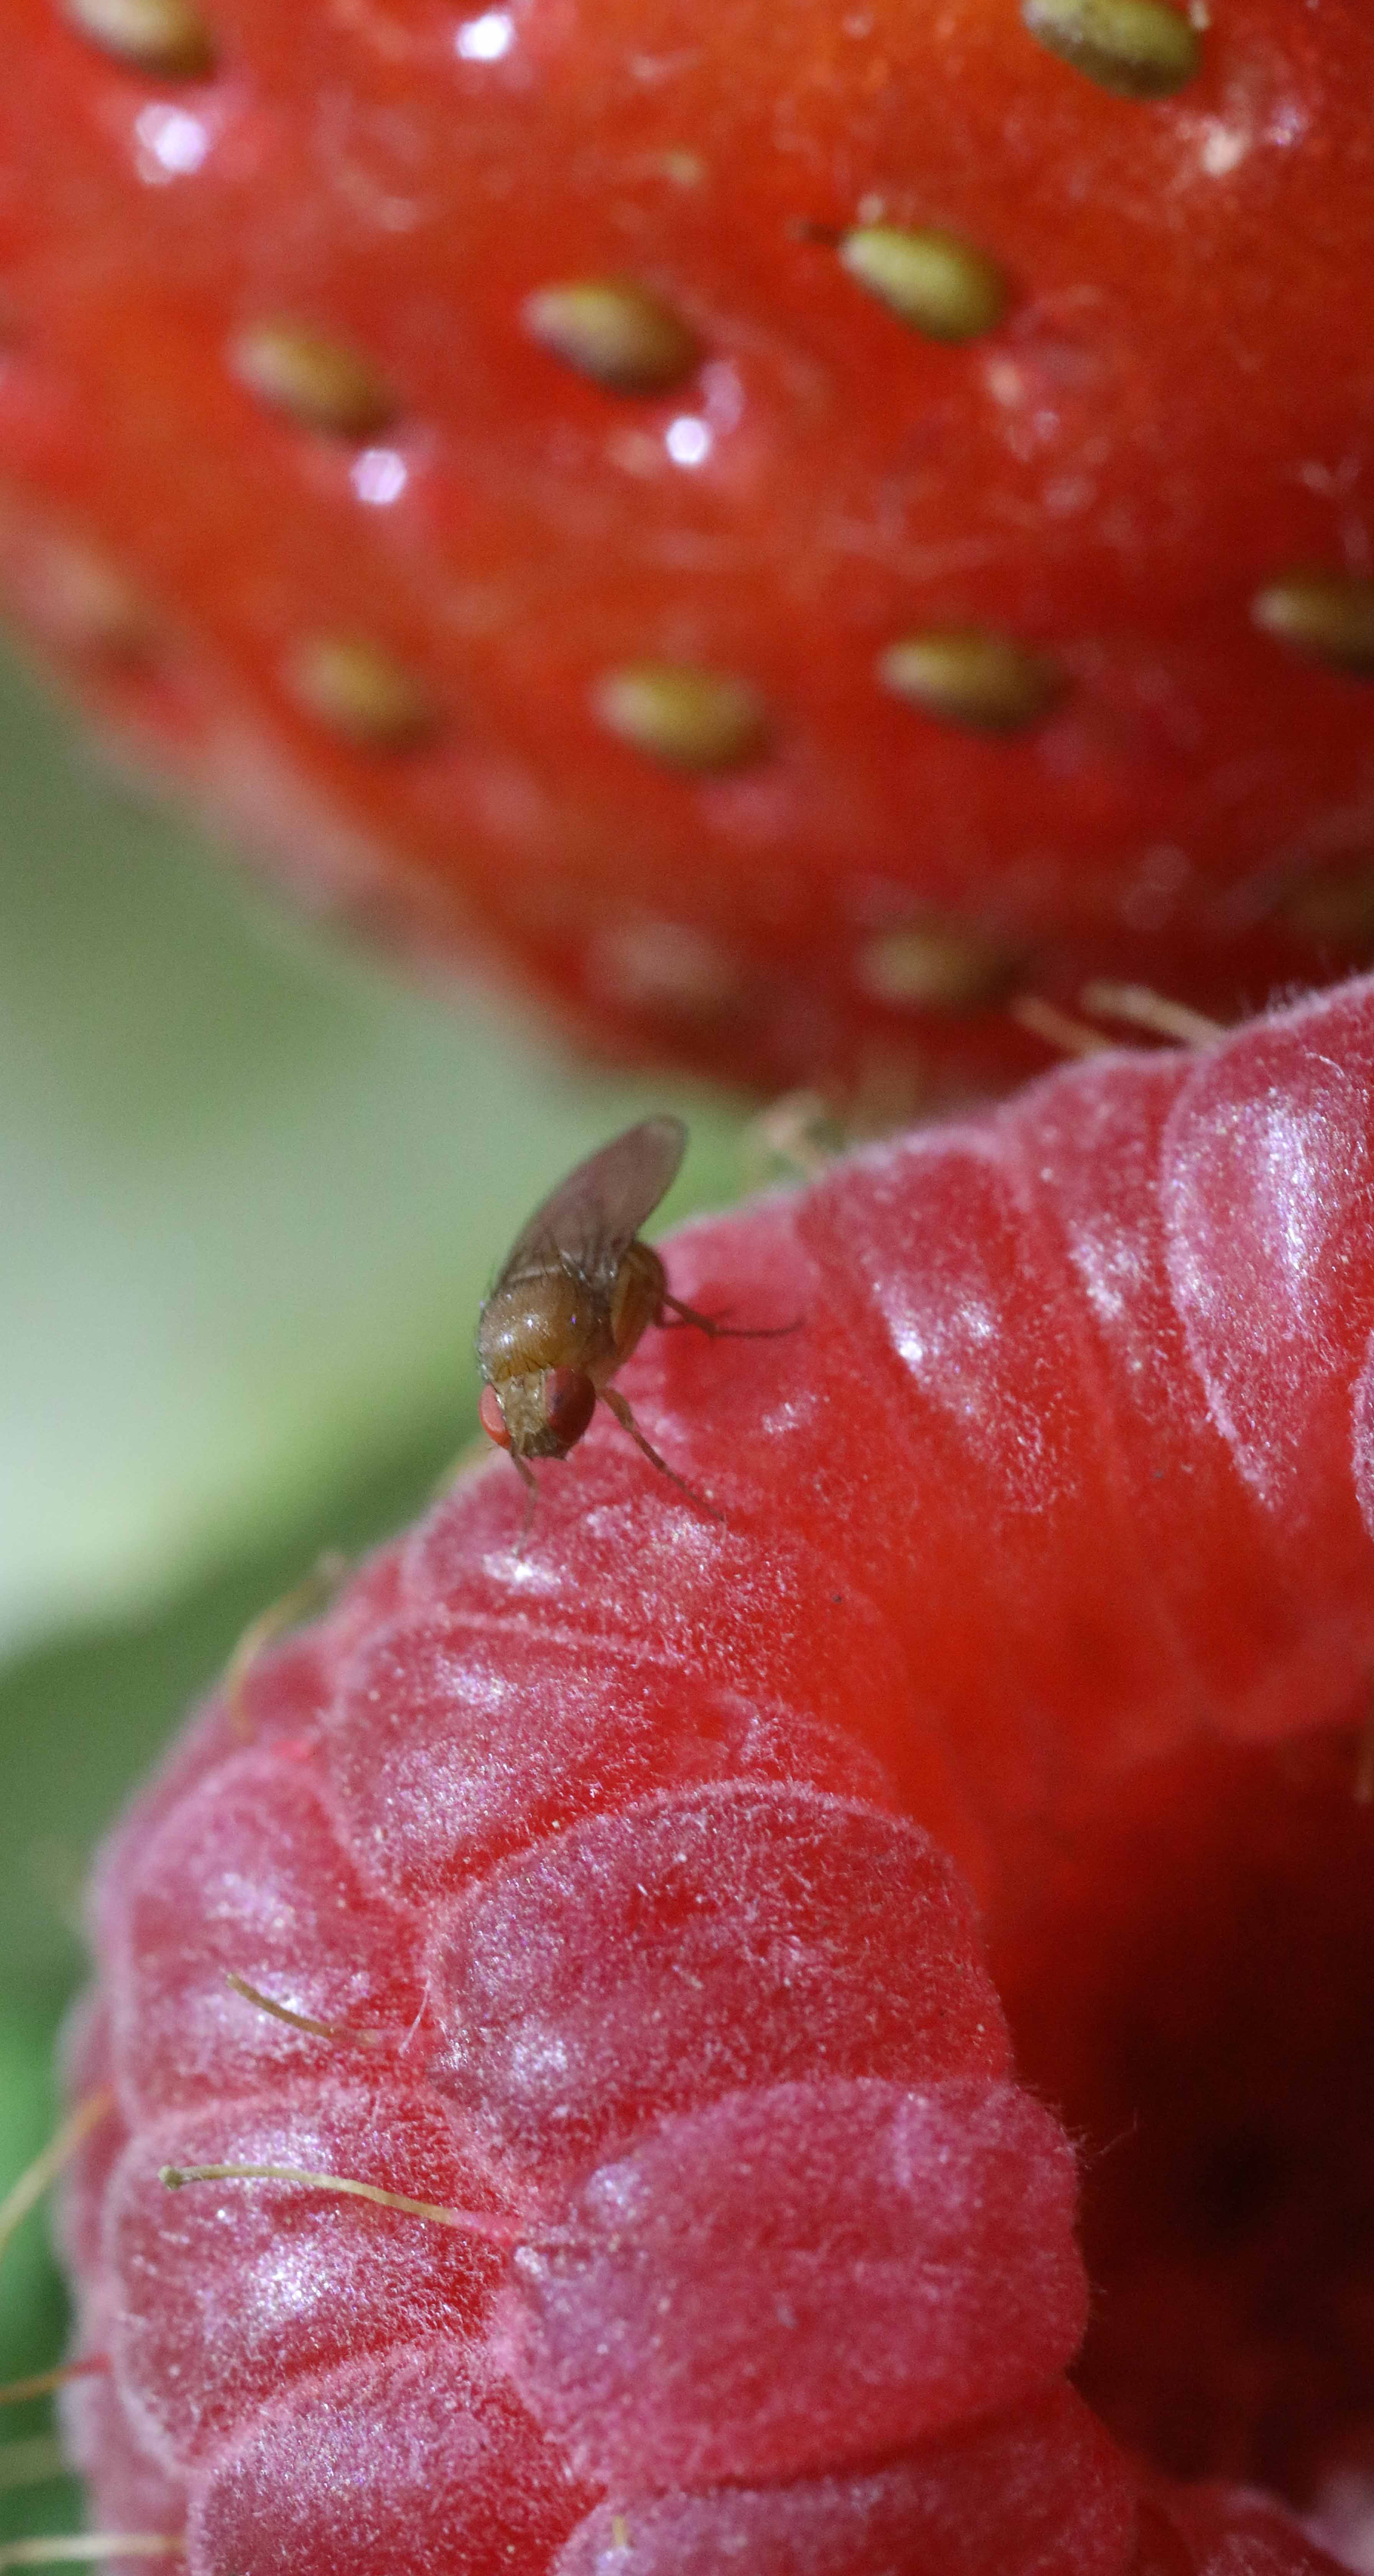 Spotted-wing drosophila on fruit